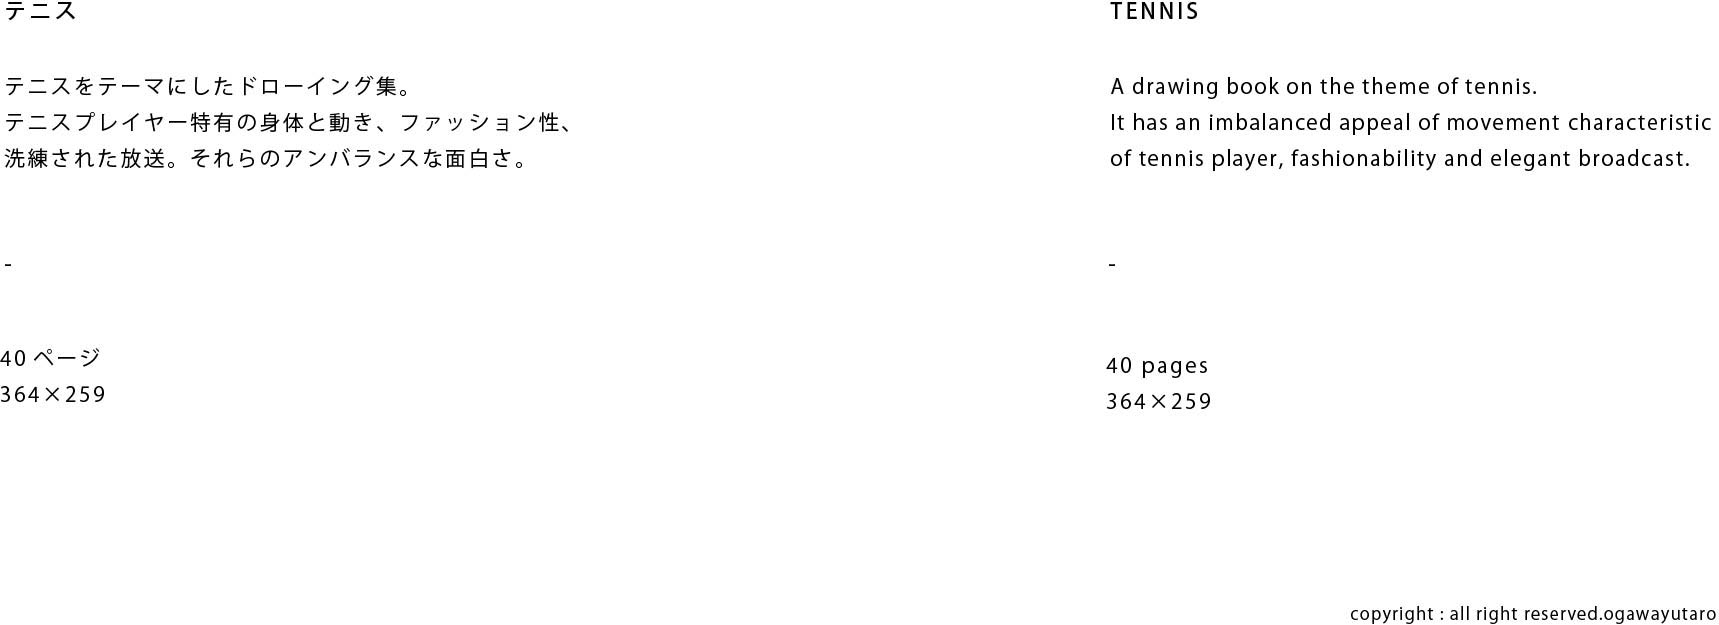 tennis_text